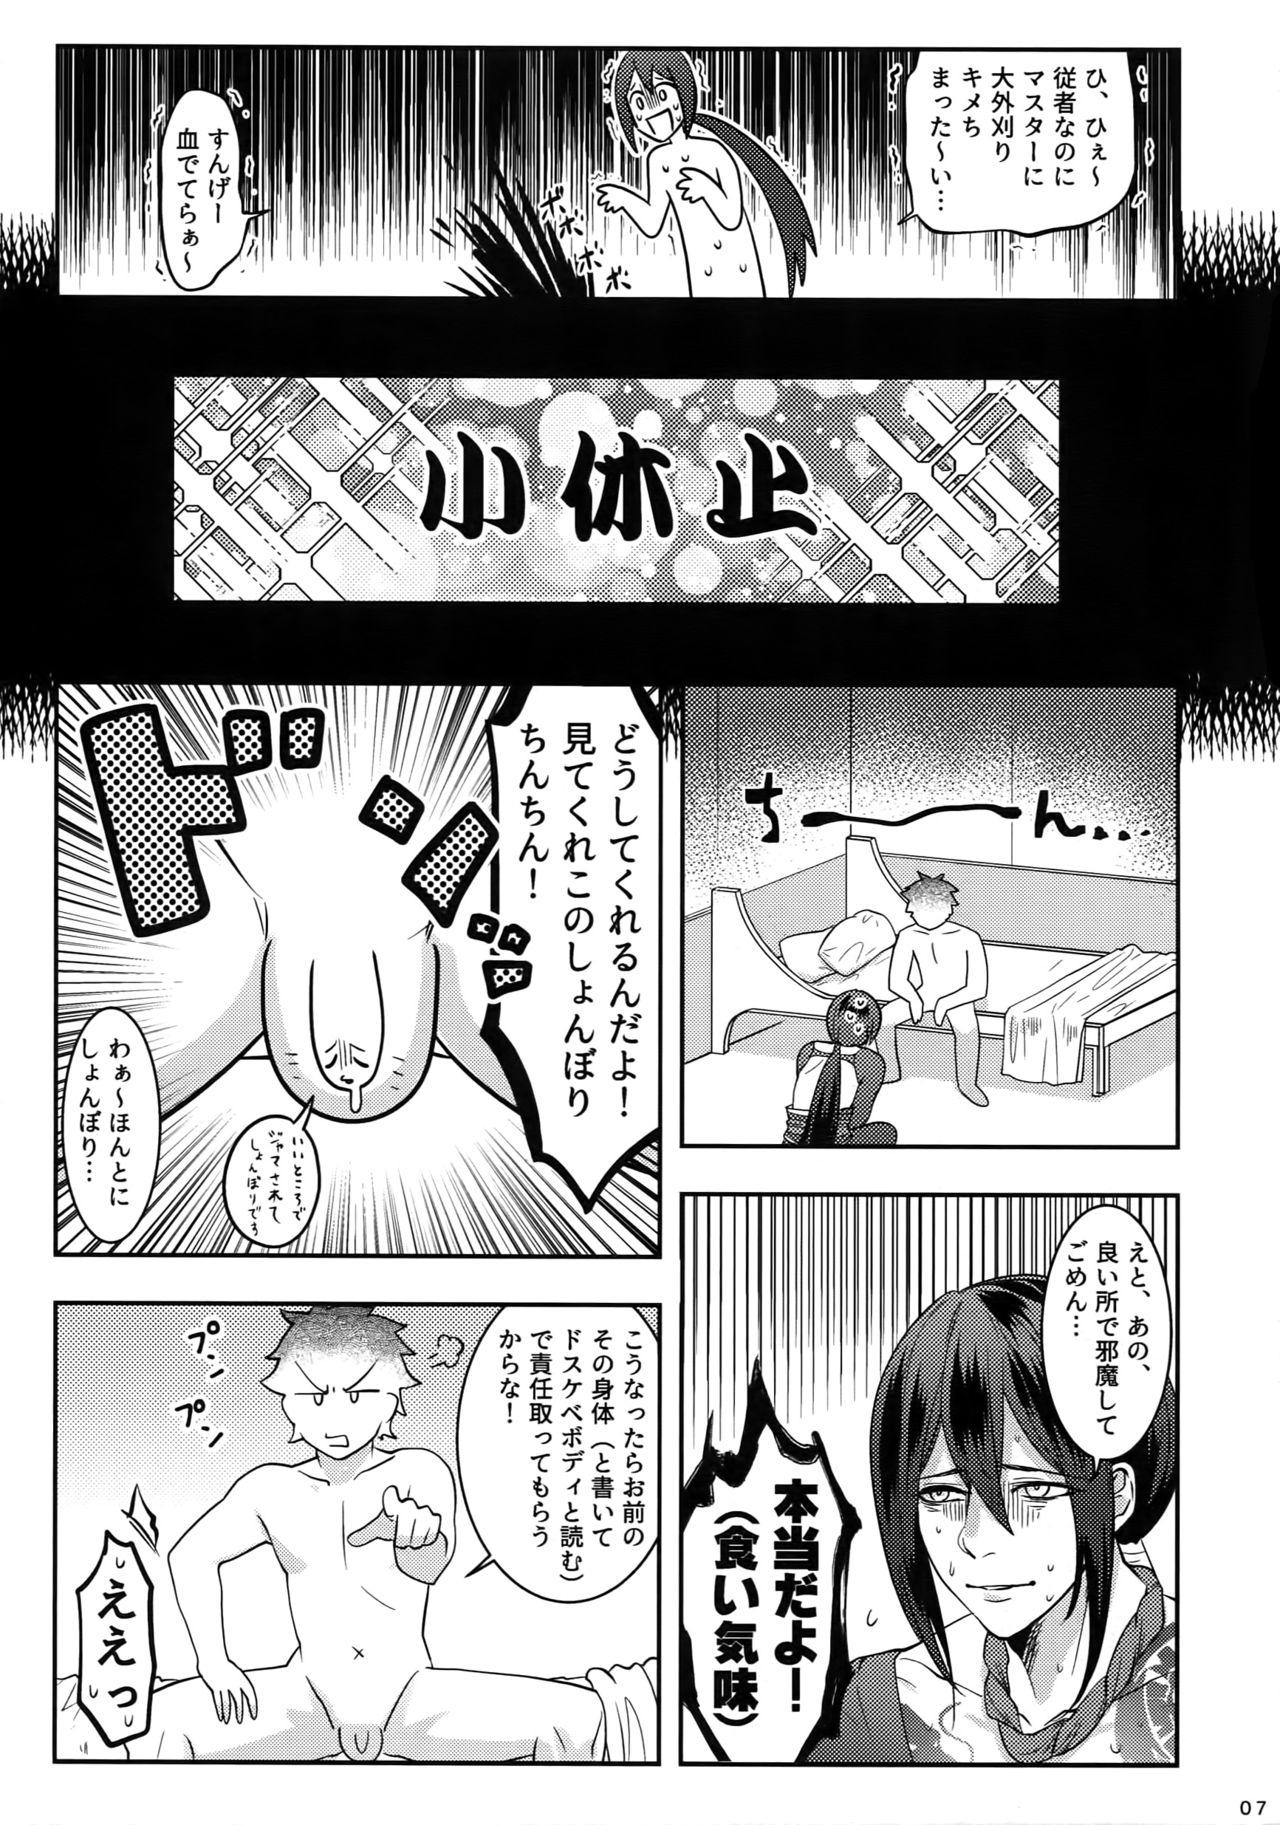 Eat Reiju no Mudazukai! Yarasete Kure Shinjuku no Assassin! - Fate grand order Shorts - Page 6